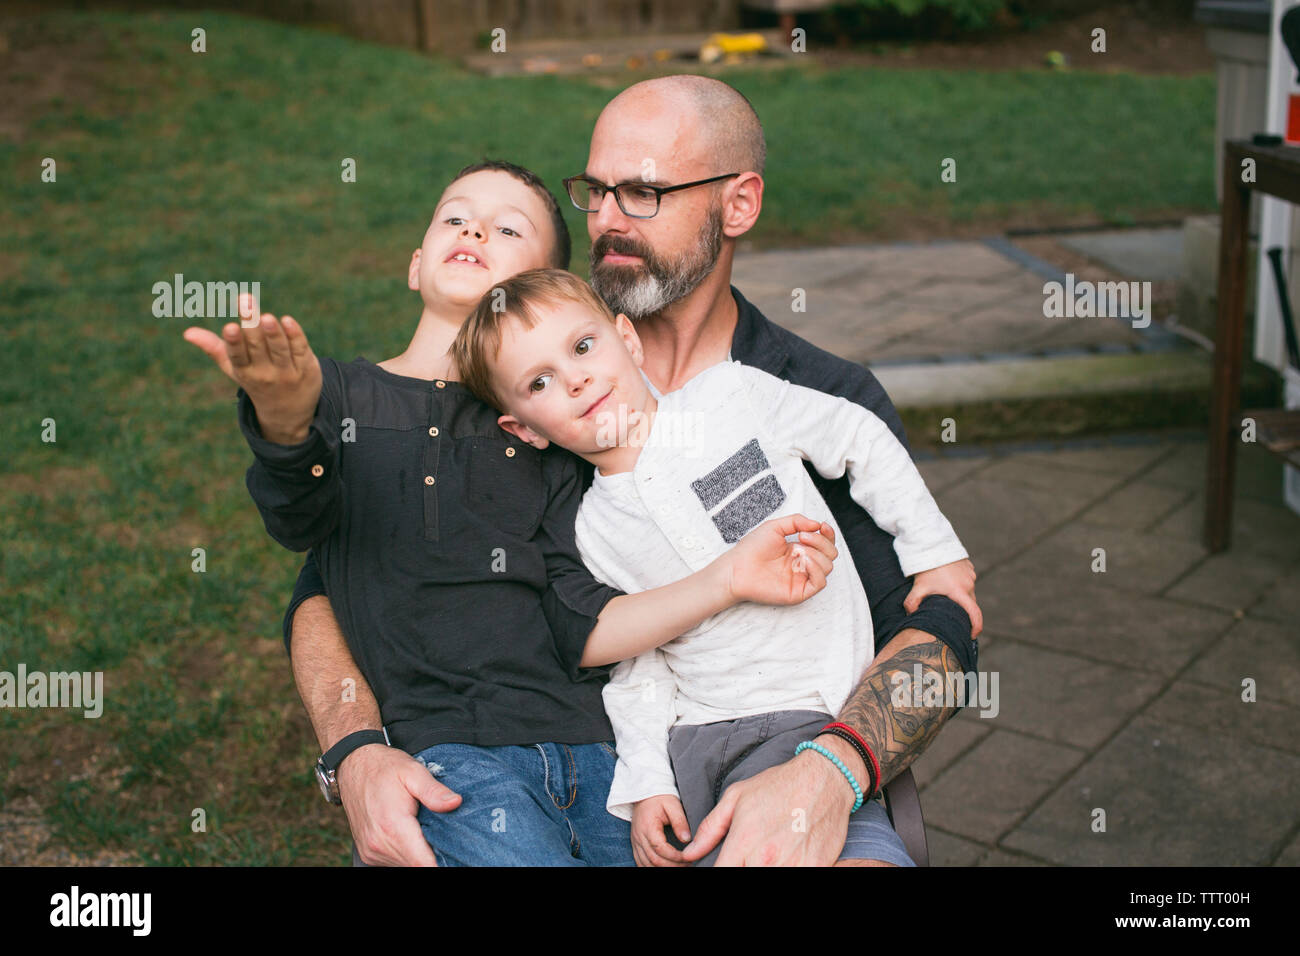 Ein glücklicher Vater hält seine beiden kleinen Kinder in seinen Schoß. Stockfoto